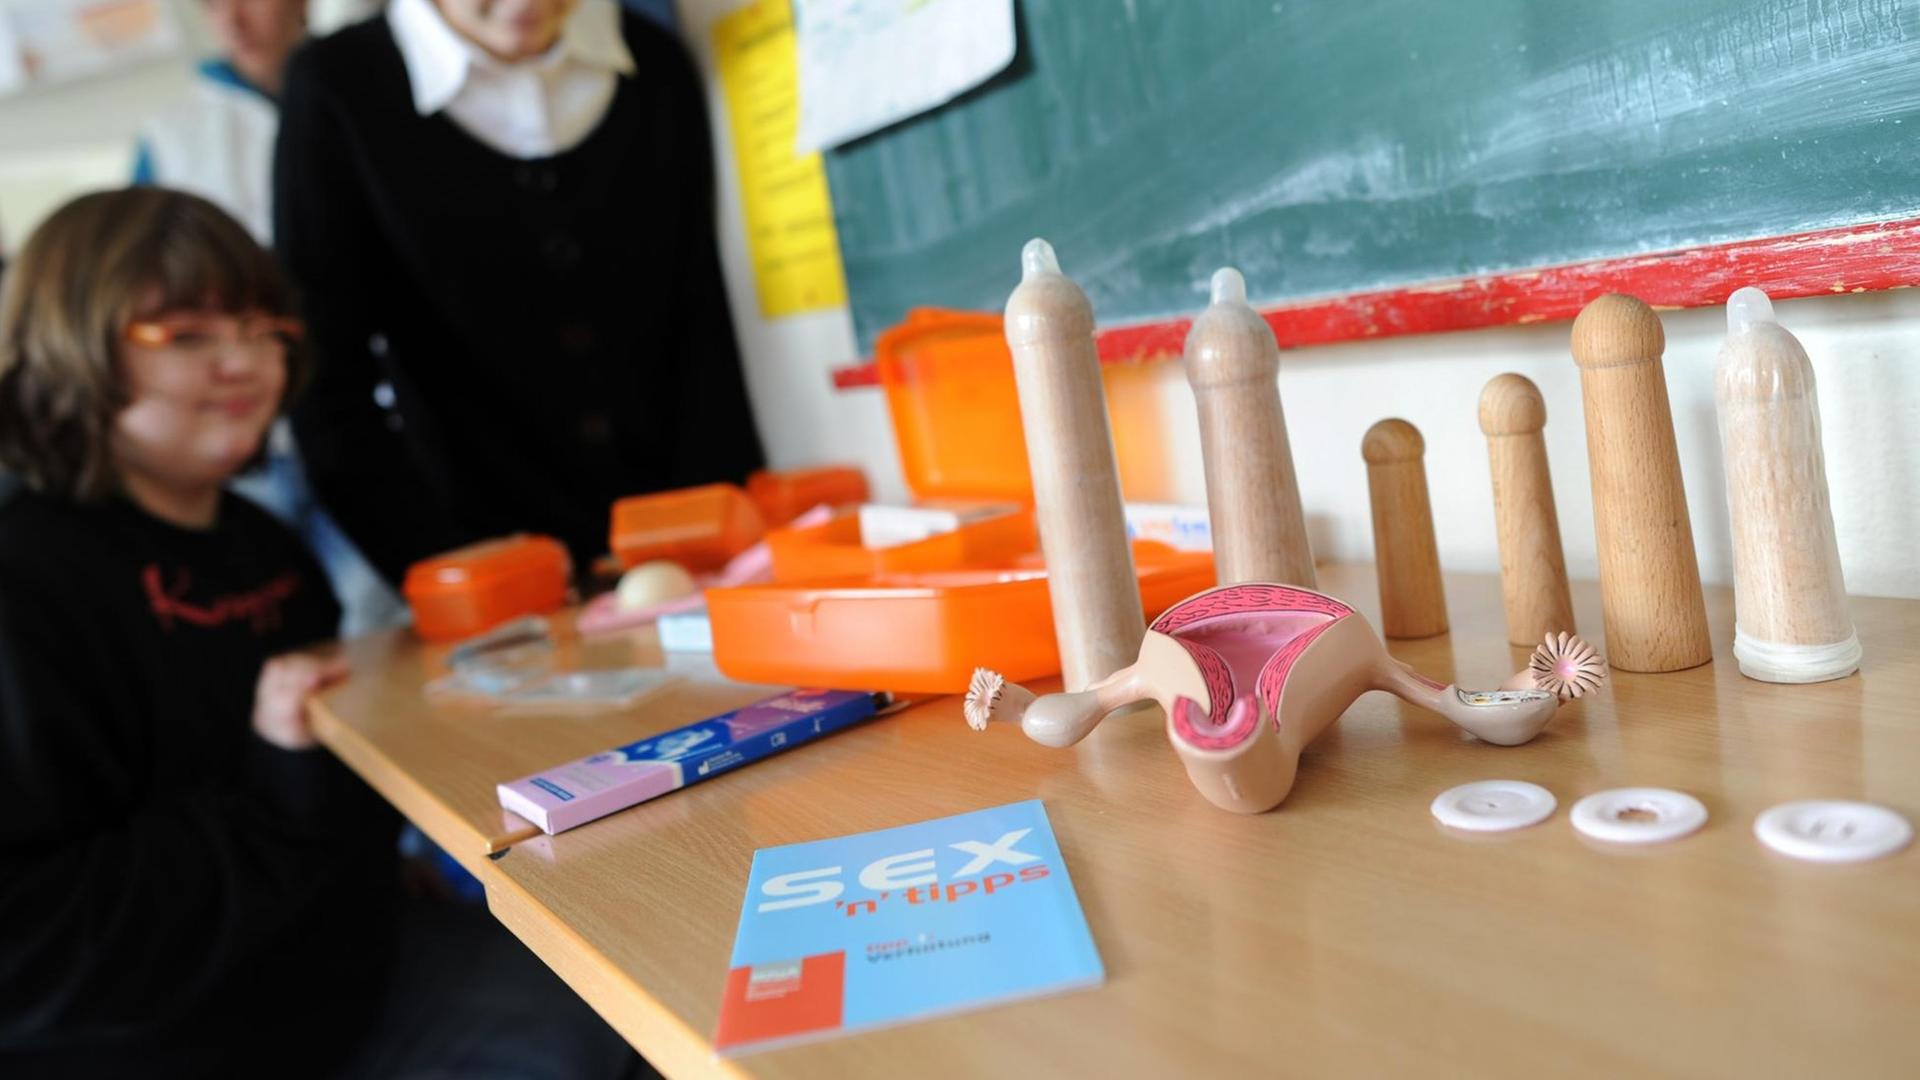 Schüler stehen in einer Schule in Hannover im Sexualkundeunterricht neben Anschauungsmaterial zur Unterrichtseinheit "Sozialkompetenz und Sexualerziehung".